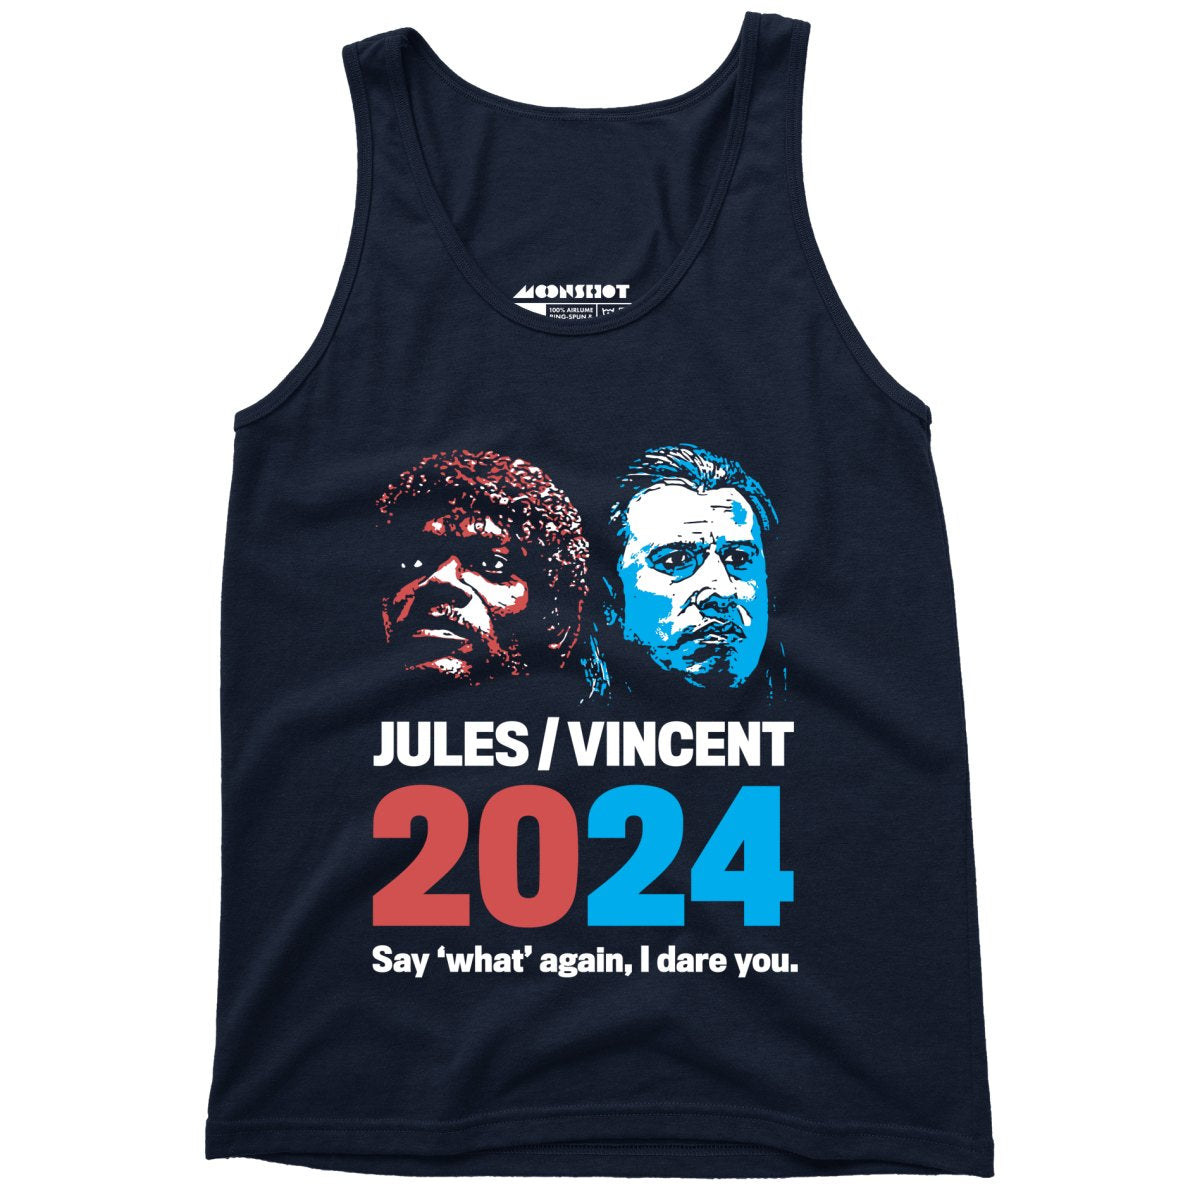 Jules Vincent 2024 - Unisex Tank Top